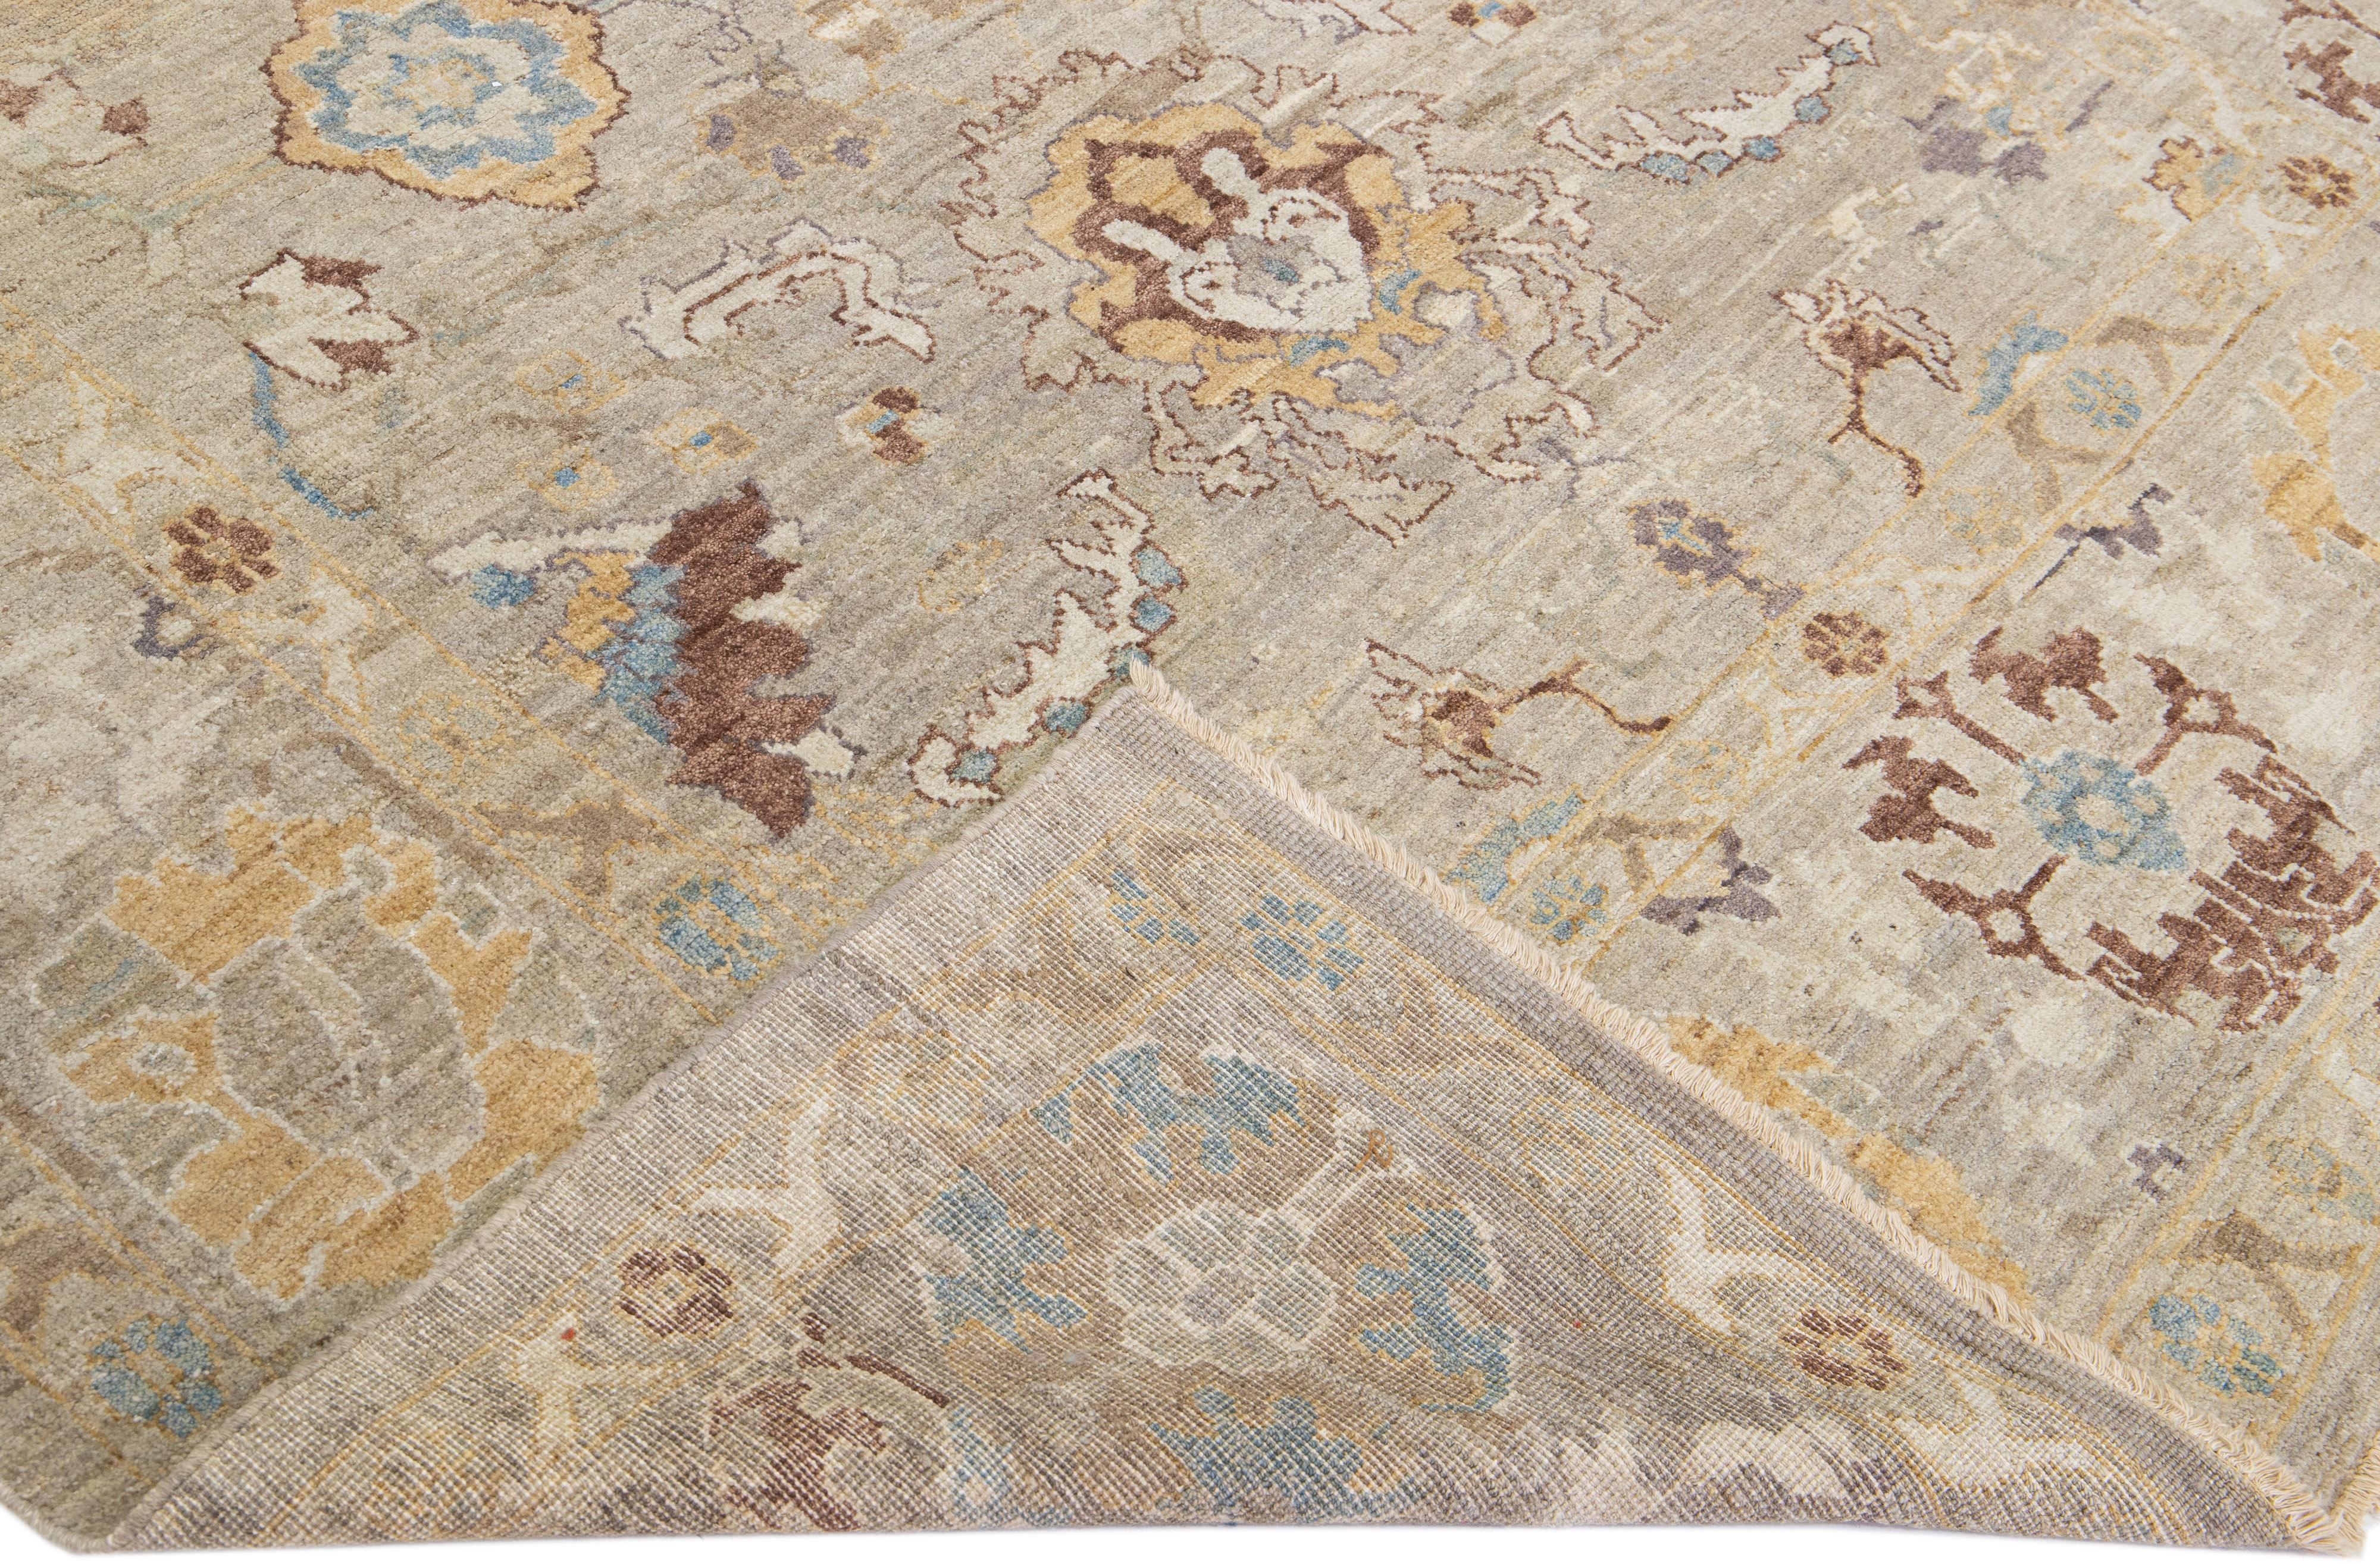 Wunderschöner moderner Sultanabad-Teppich aus handgeknüpfter Wolle mit grau-beigem Feld. Dieser Sultanabad-Teppich hat braune, graue und blaue Akzente in einem prächtigen klassischen Blumenmuster.

Dieser Teppich misst: 7'9